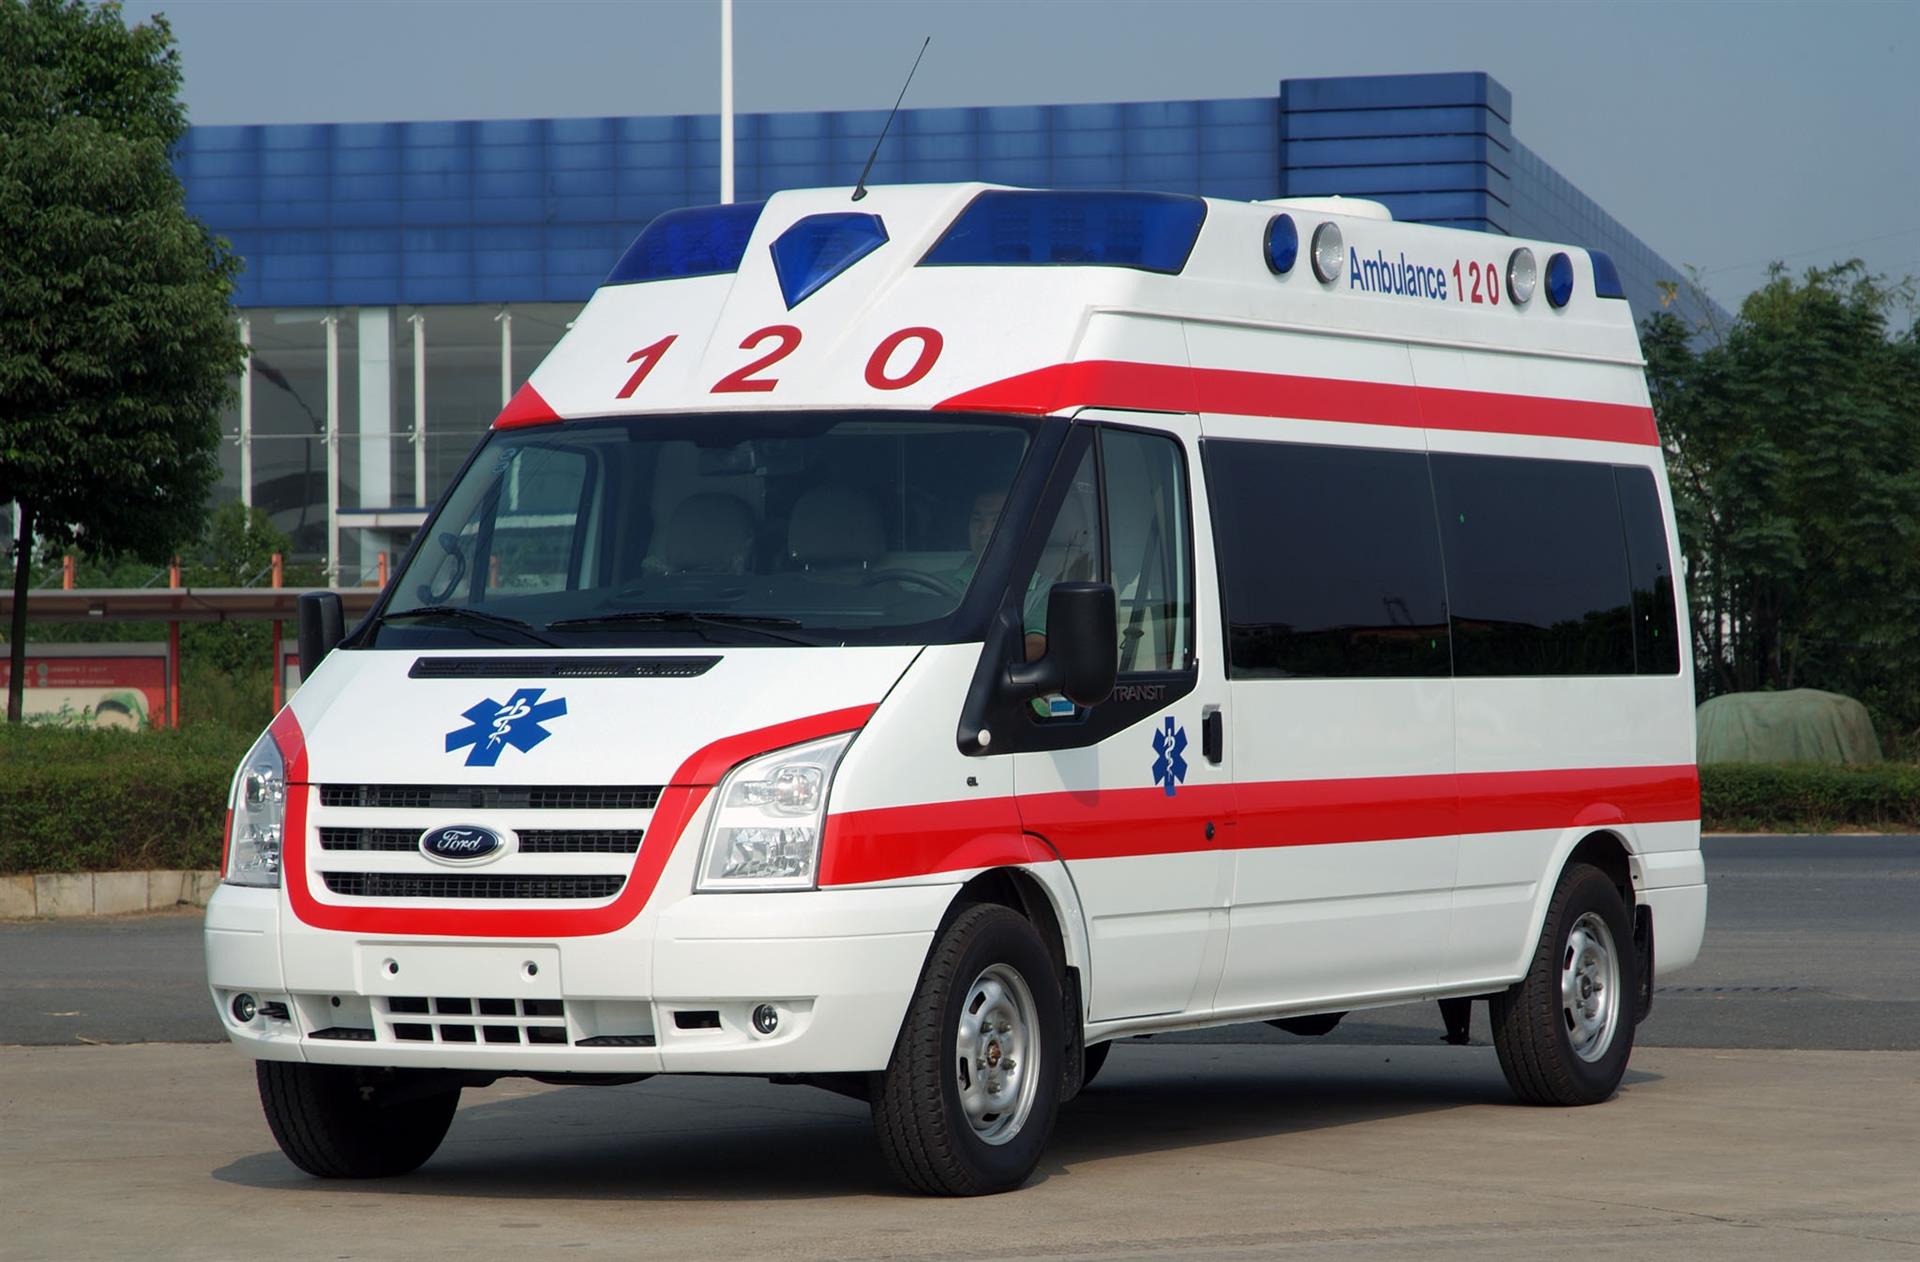 台州私人120救护车服务电话/异地救护车运送病人